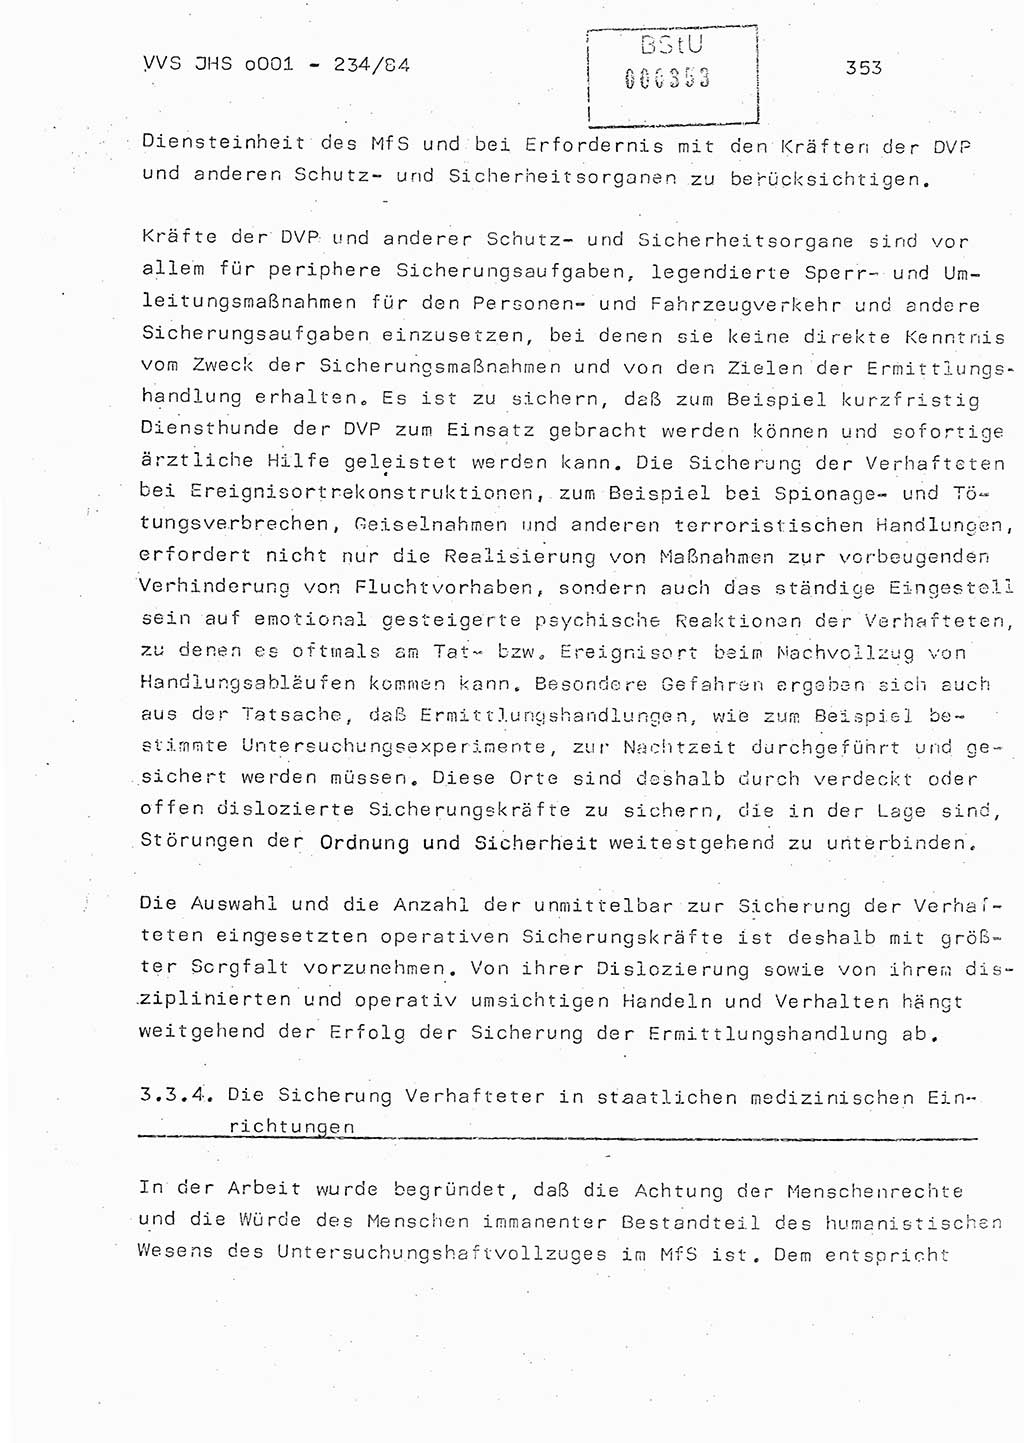 Dissertation Oberst Siegfried Rataizick (Abt. ⅩⅣ), Oberstleutnant Volkmar Heinz (Abt. ⅩⅣ), Oberstleutnant Werner Stein (HA Ⅸ), Hauptmann Heinz Conrad (JHS), Ministerium für Staatssicherheit (MfS) [Deutsche Demokratische Republik (DDR)], Juristische Hochschule (JHS), Vertrauliche Verschlußsache (VVS) o001-234/84, Potsdam 1984, Seite 353 (Diss. MfS DDR JHS VVS o001-234/84 1984, S. 353)